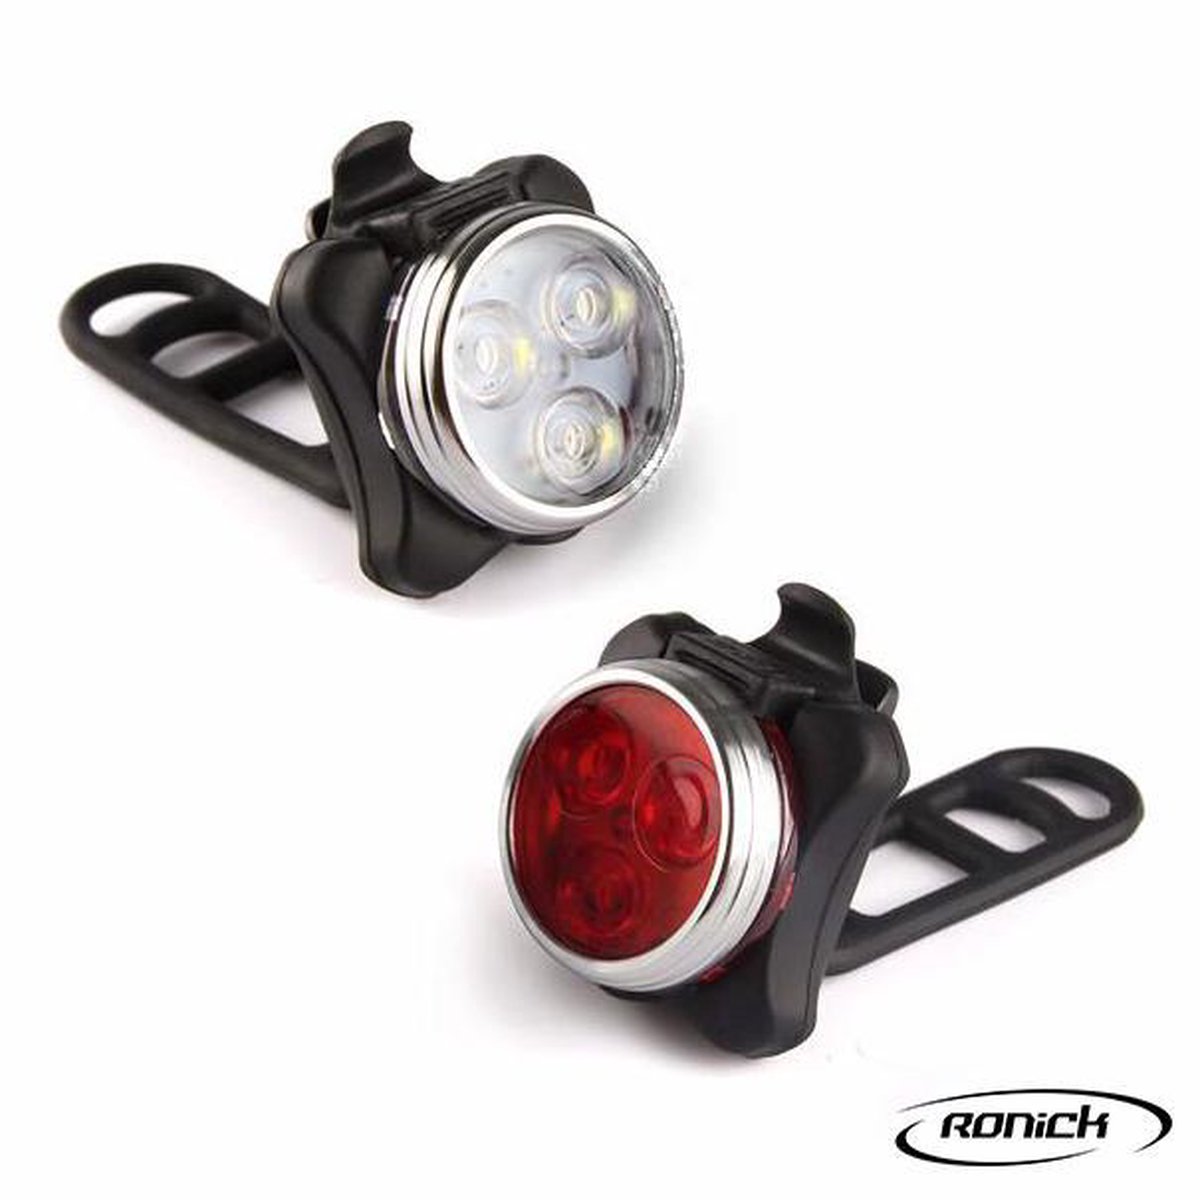 Ronick LED Fietsverlichtingset - USB Oplaadbaar Fietslampjes set Wit en Rood – Fietslamp Voorlicht en Achterlicht